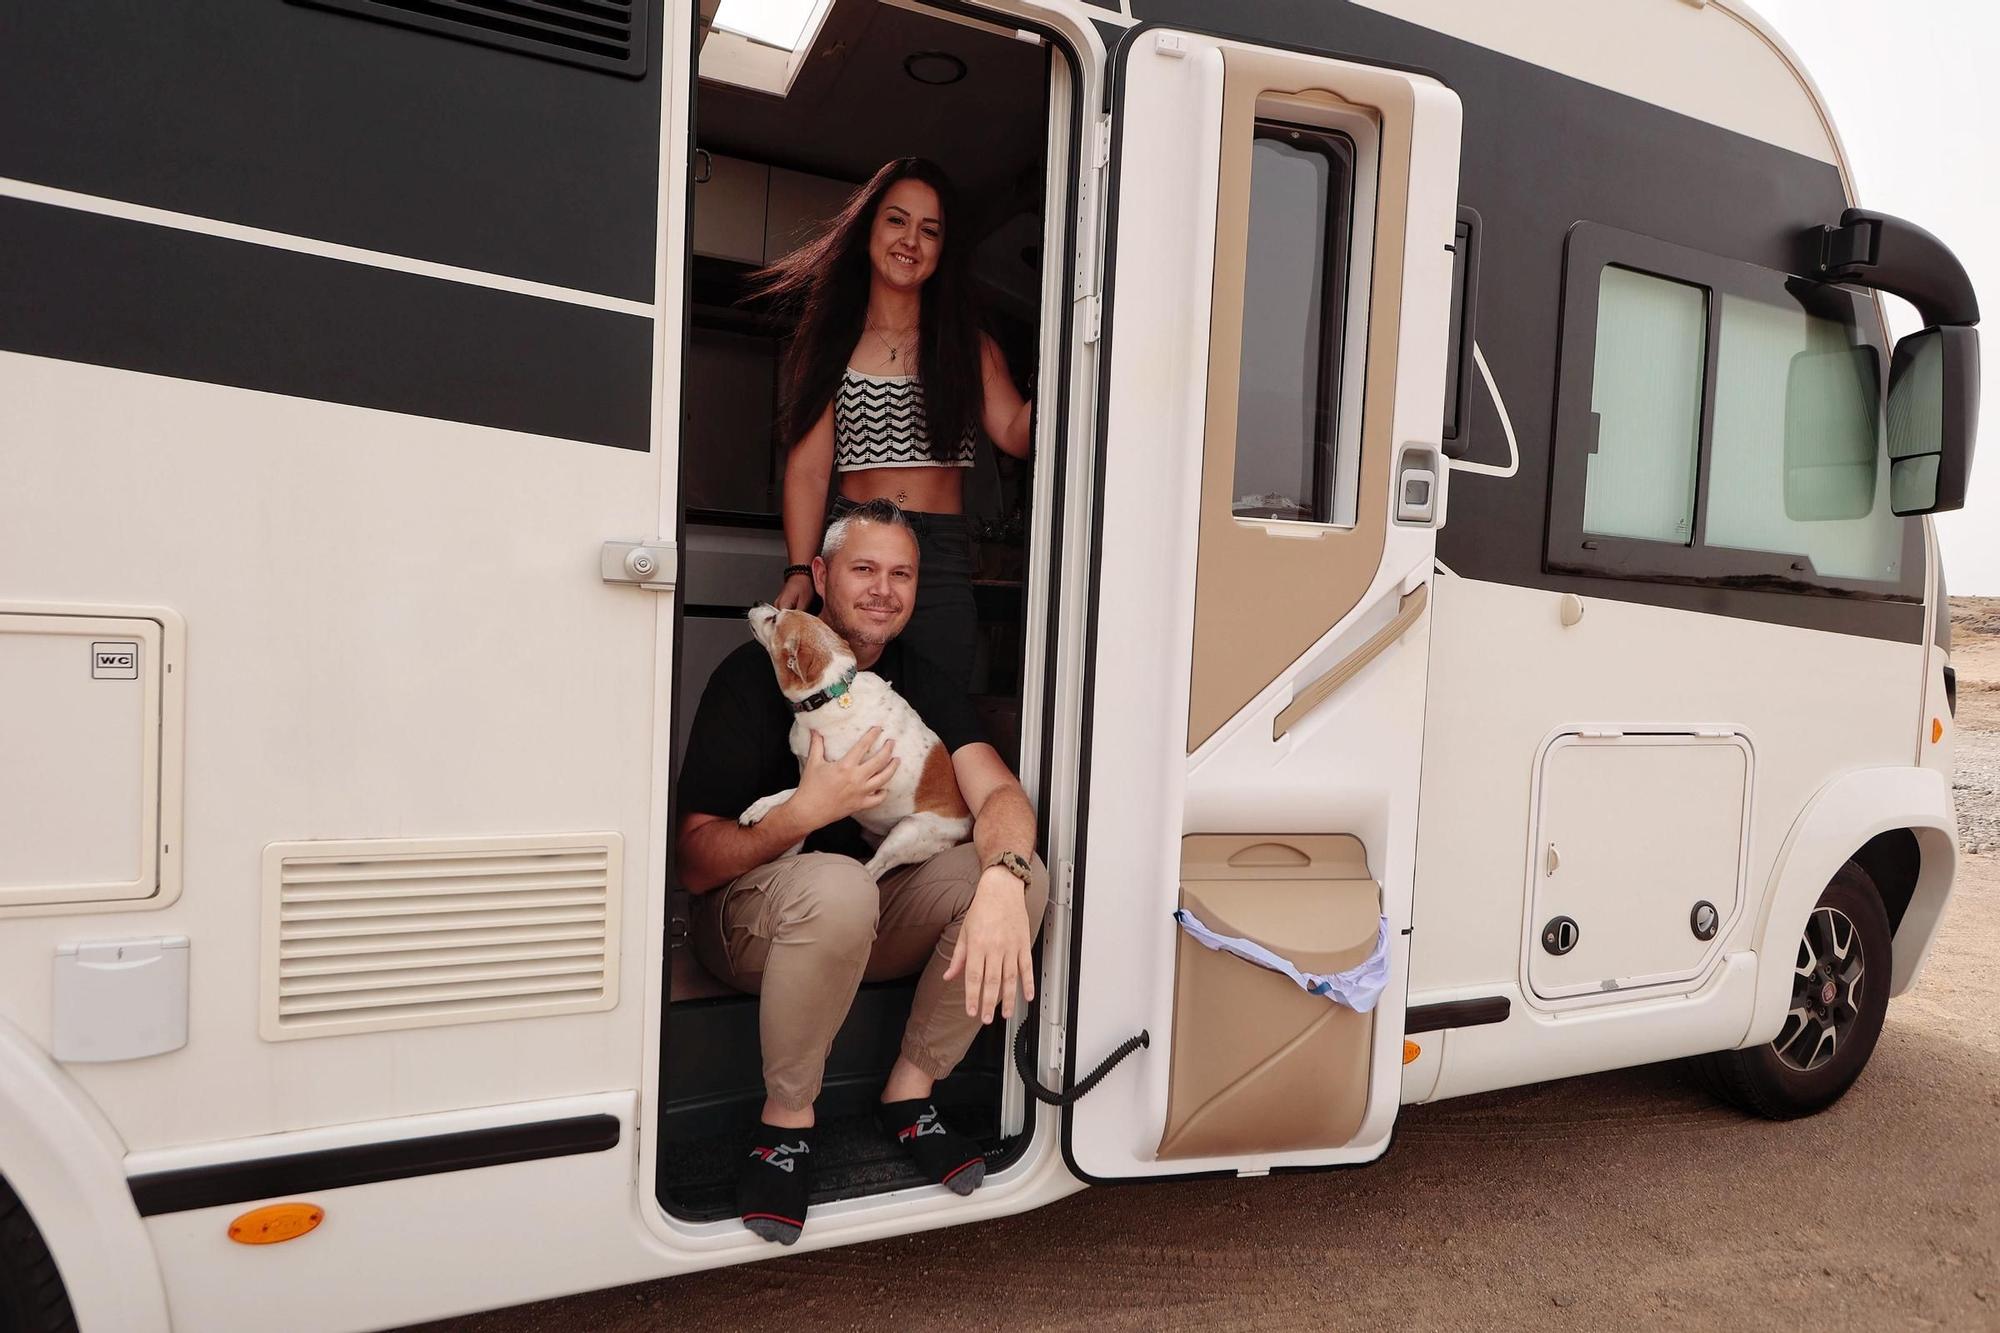 La pareja tinerfeña que vive y viaja en su hogar rodante de 12 metros